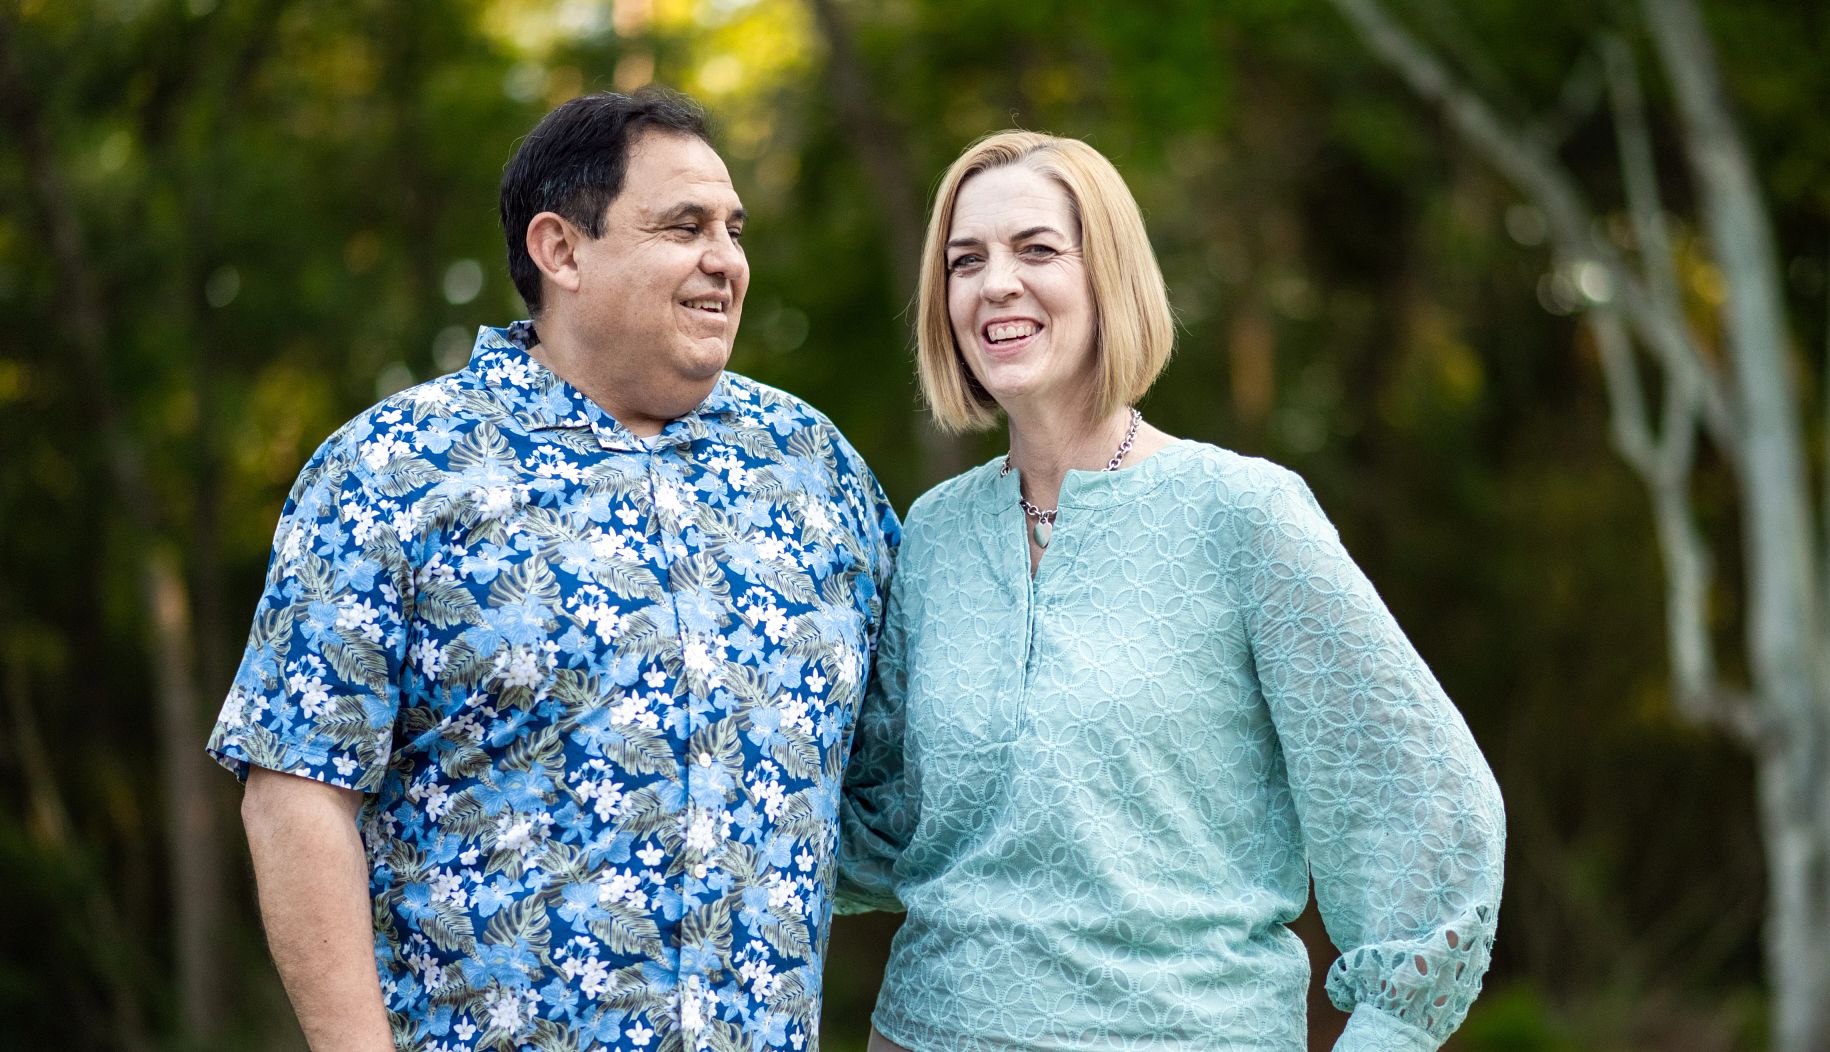 Jaime y Donna Tovalin, ambos con camisas estampadas, sonríen para al aire libre.